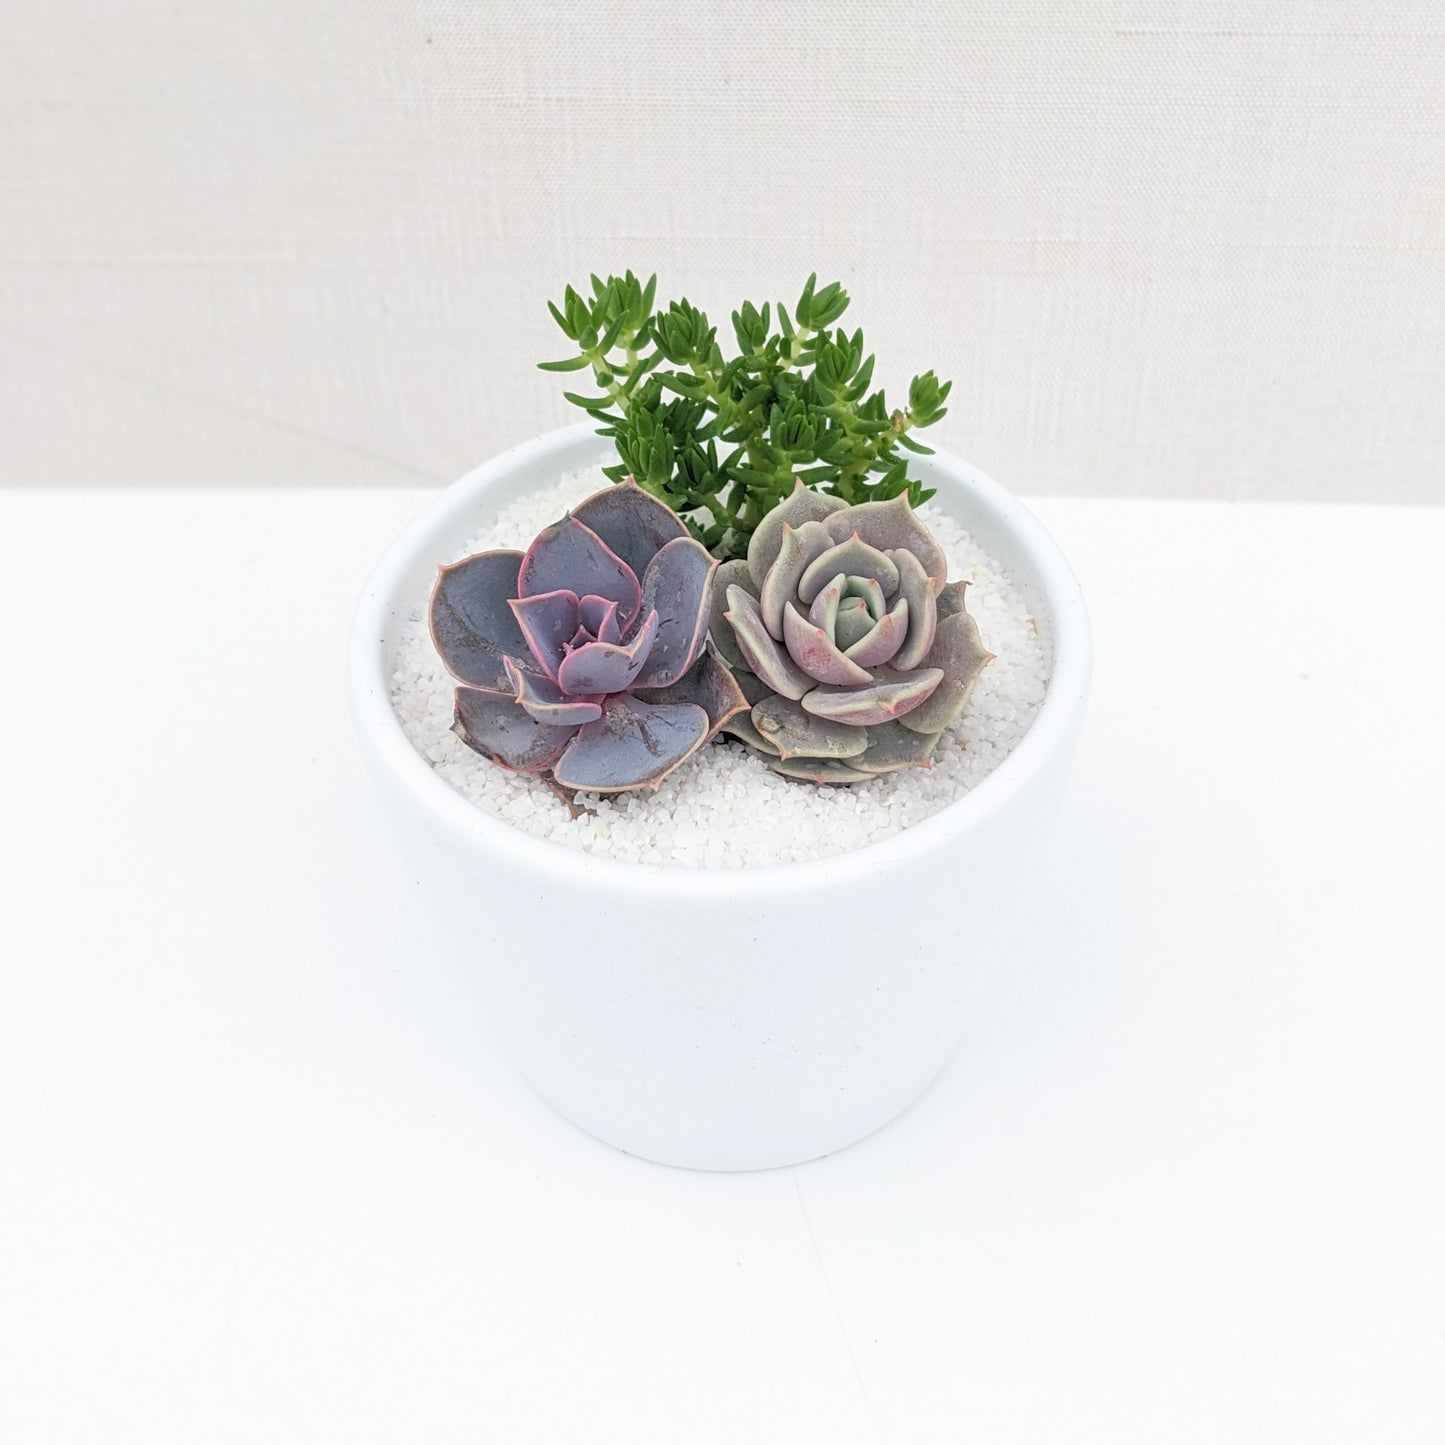 Small Ceramic Arrangement